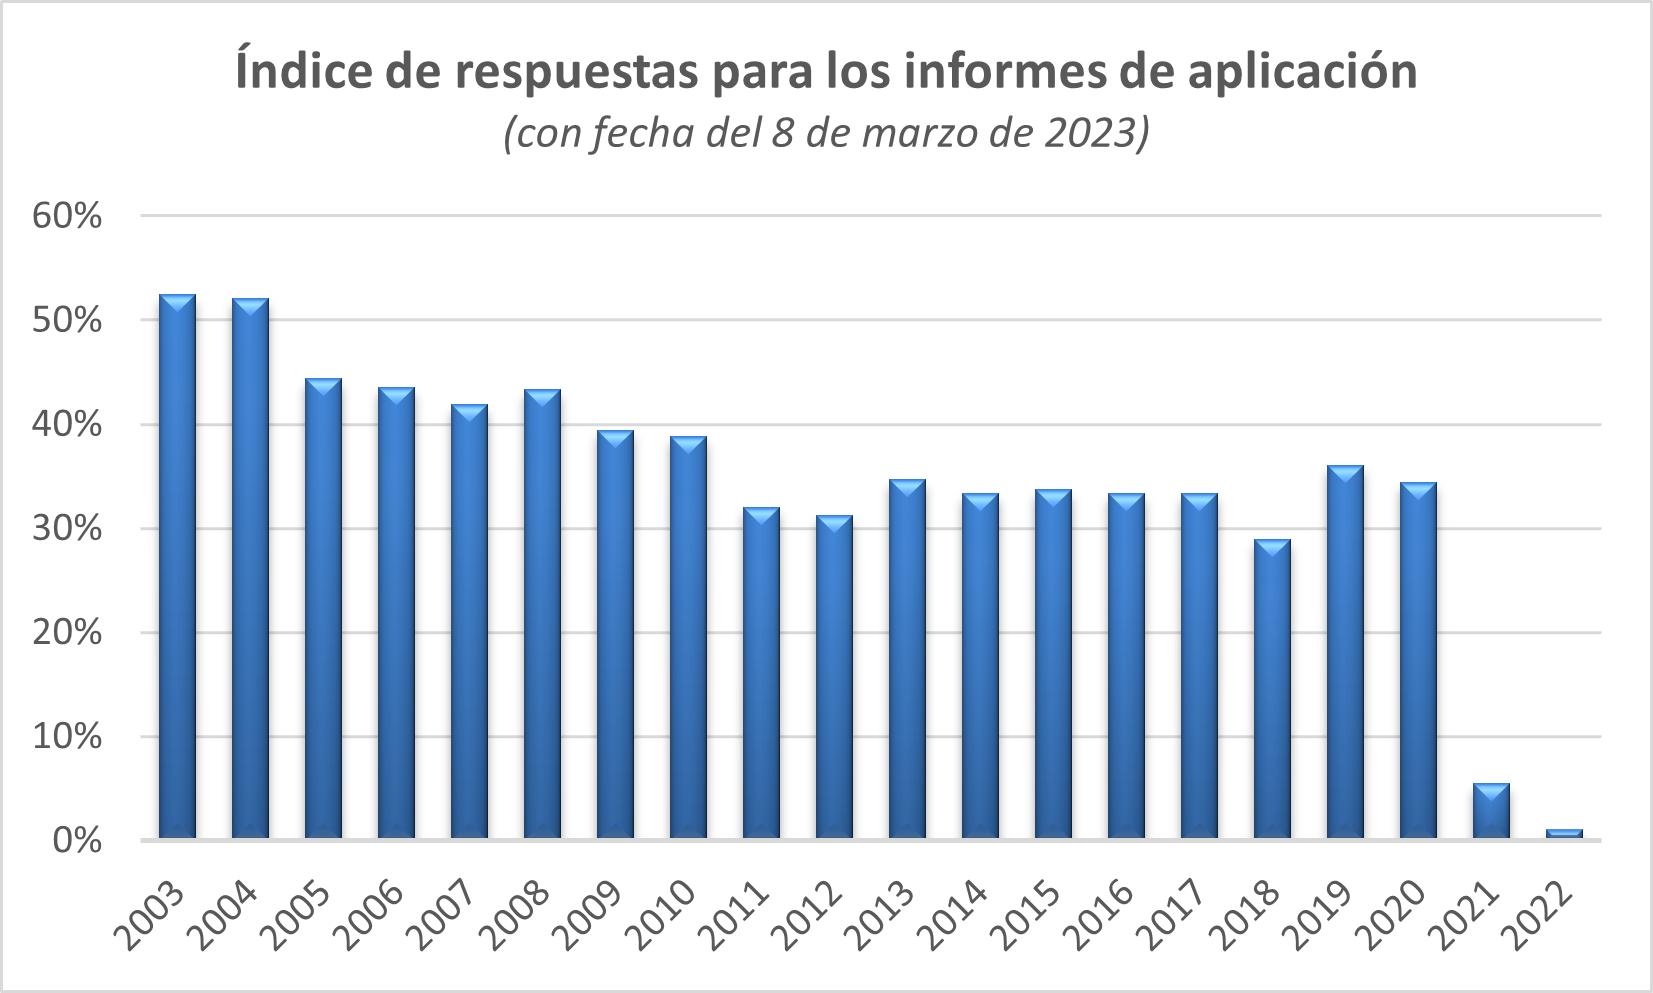 Indice de respuestas para los informes de aplicacion (con fecha del 8 de marzo de 2023)